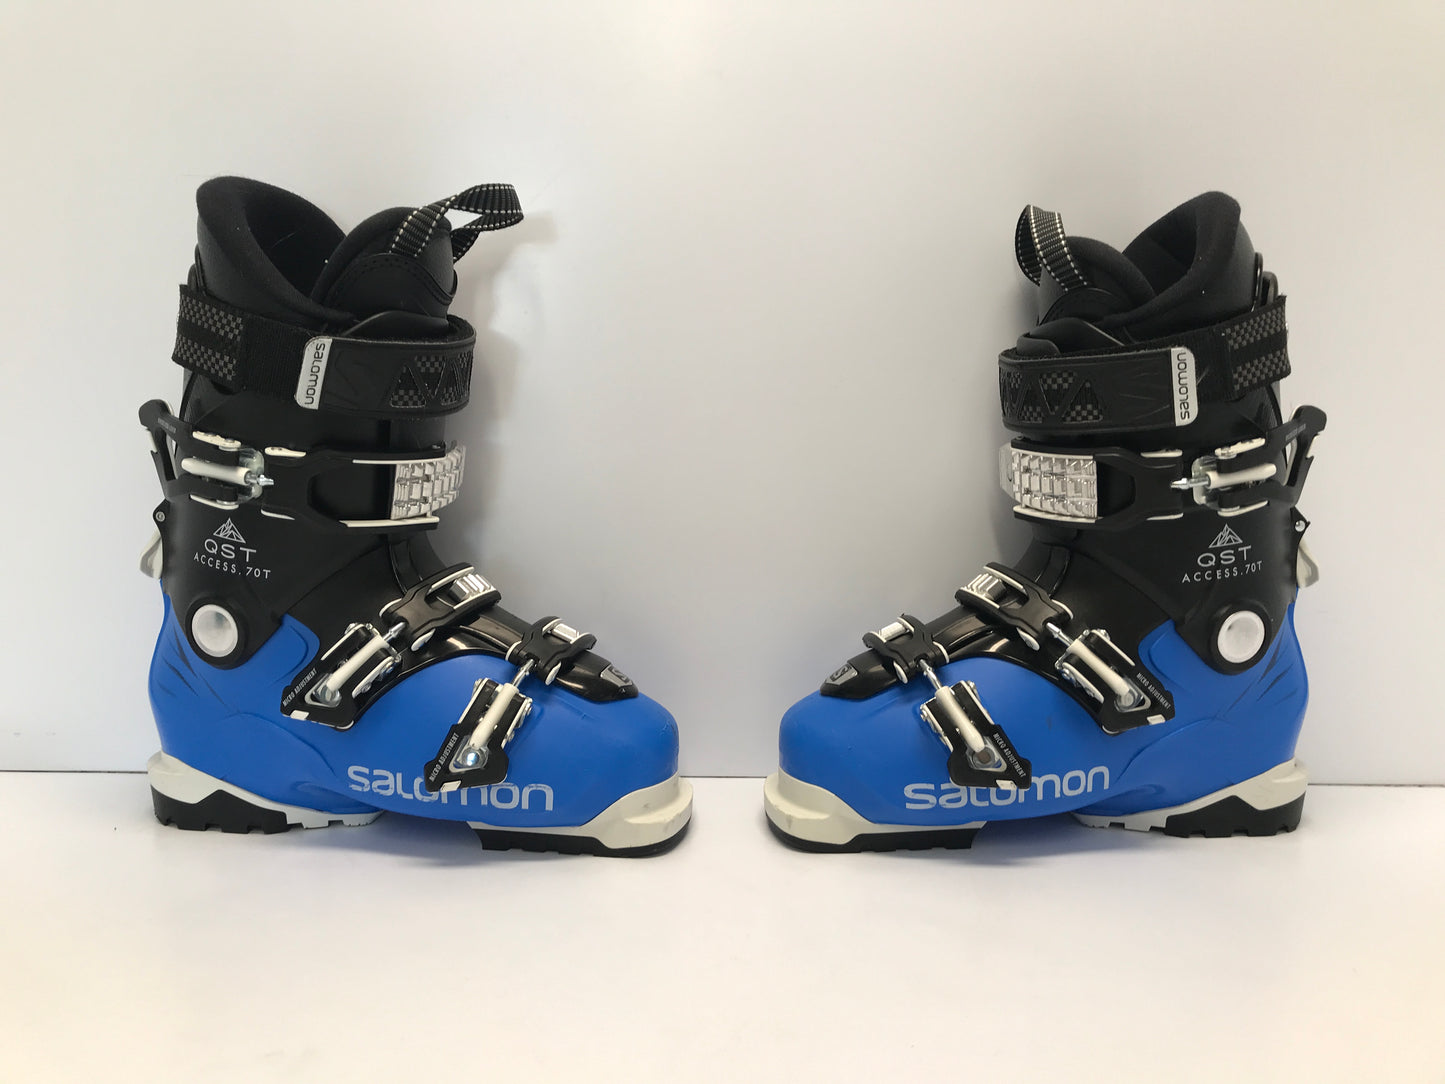 Ski Boots Mondo Size 24.5 Men's Size 6.5 Ladies size 7.5 288 mm Salomon Blue White Black Excellent